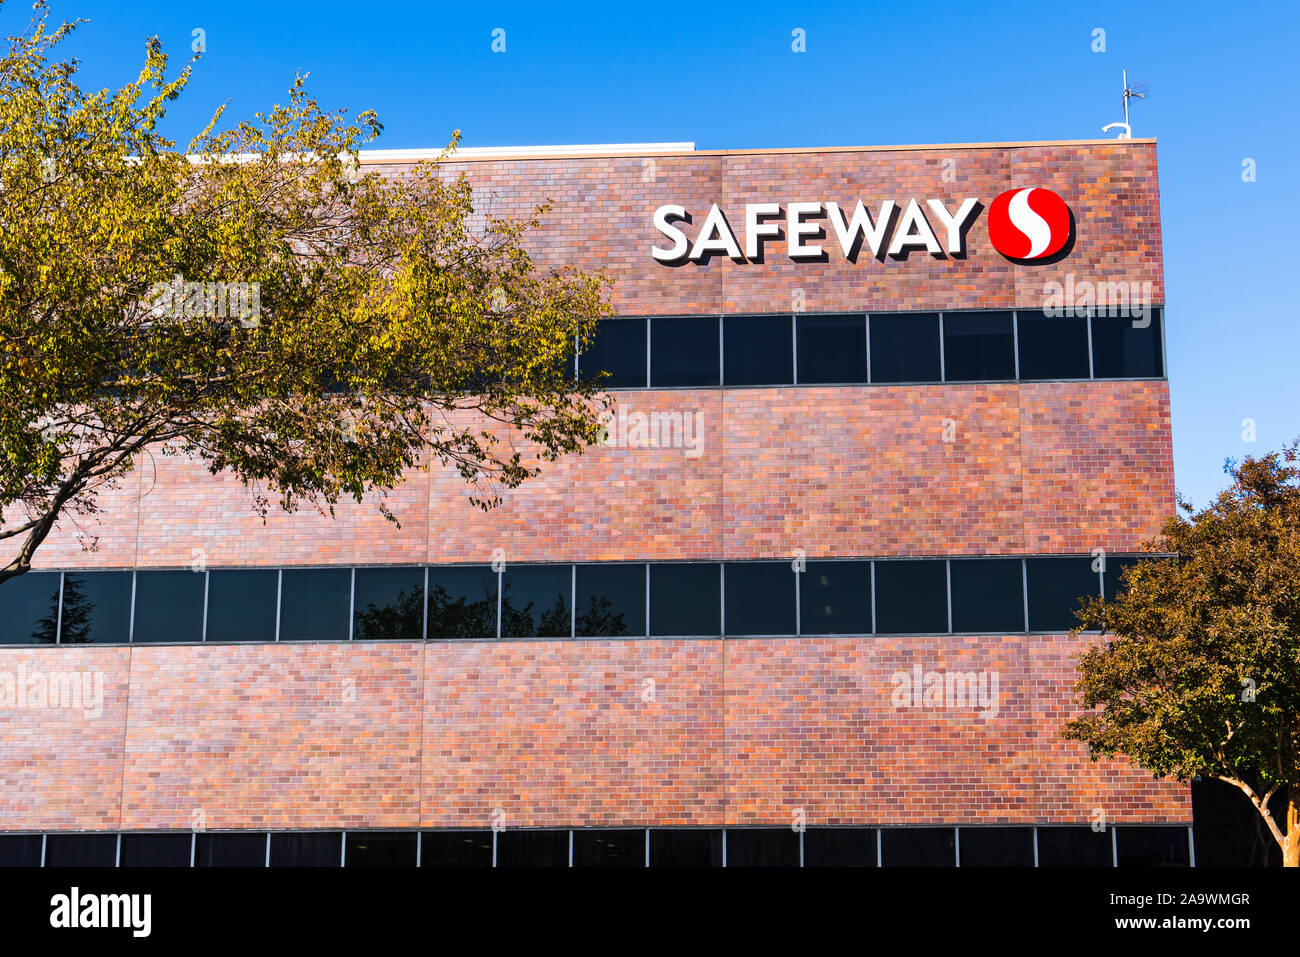 15.November 2019 Pleasanton/CA/USA - Safeway Northern California Corporate Headquarters in San Francisco Bay Area; Safeway ist eine US-amerikanische sup Stockfoto